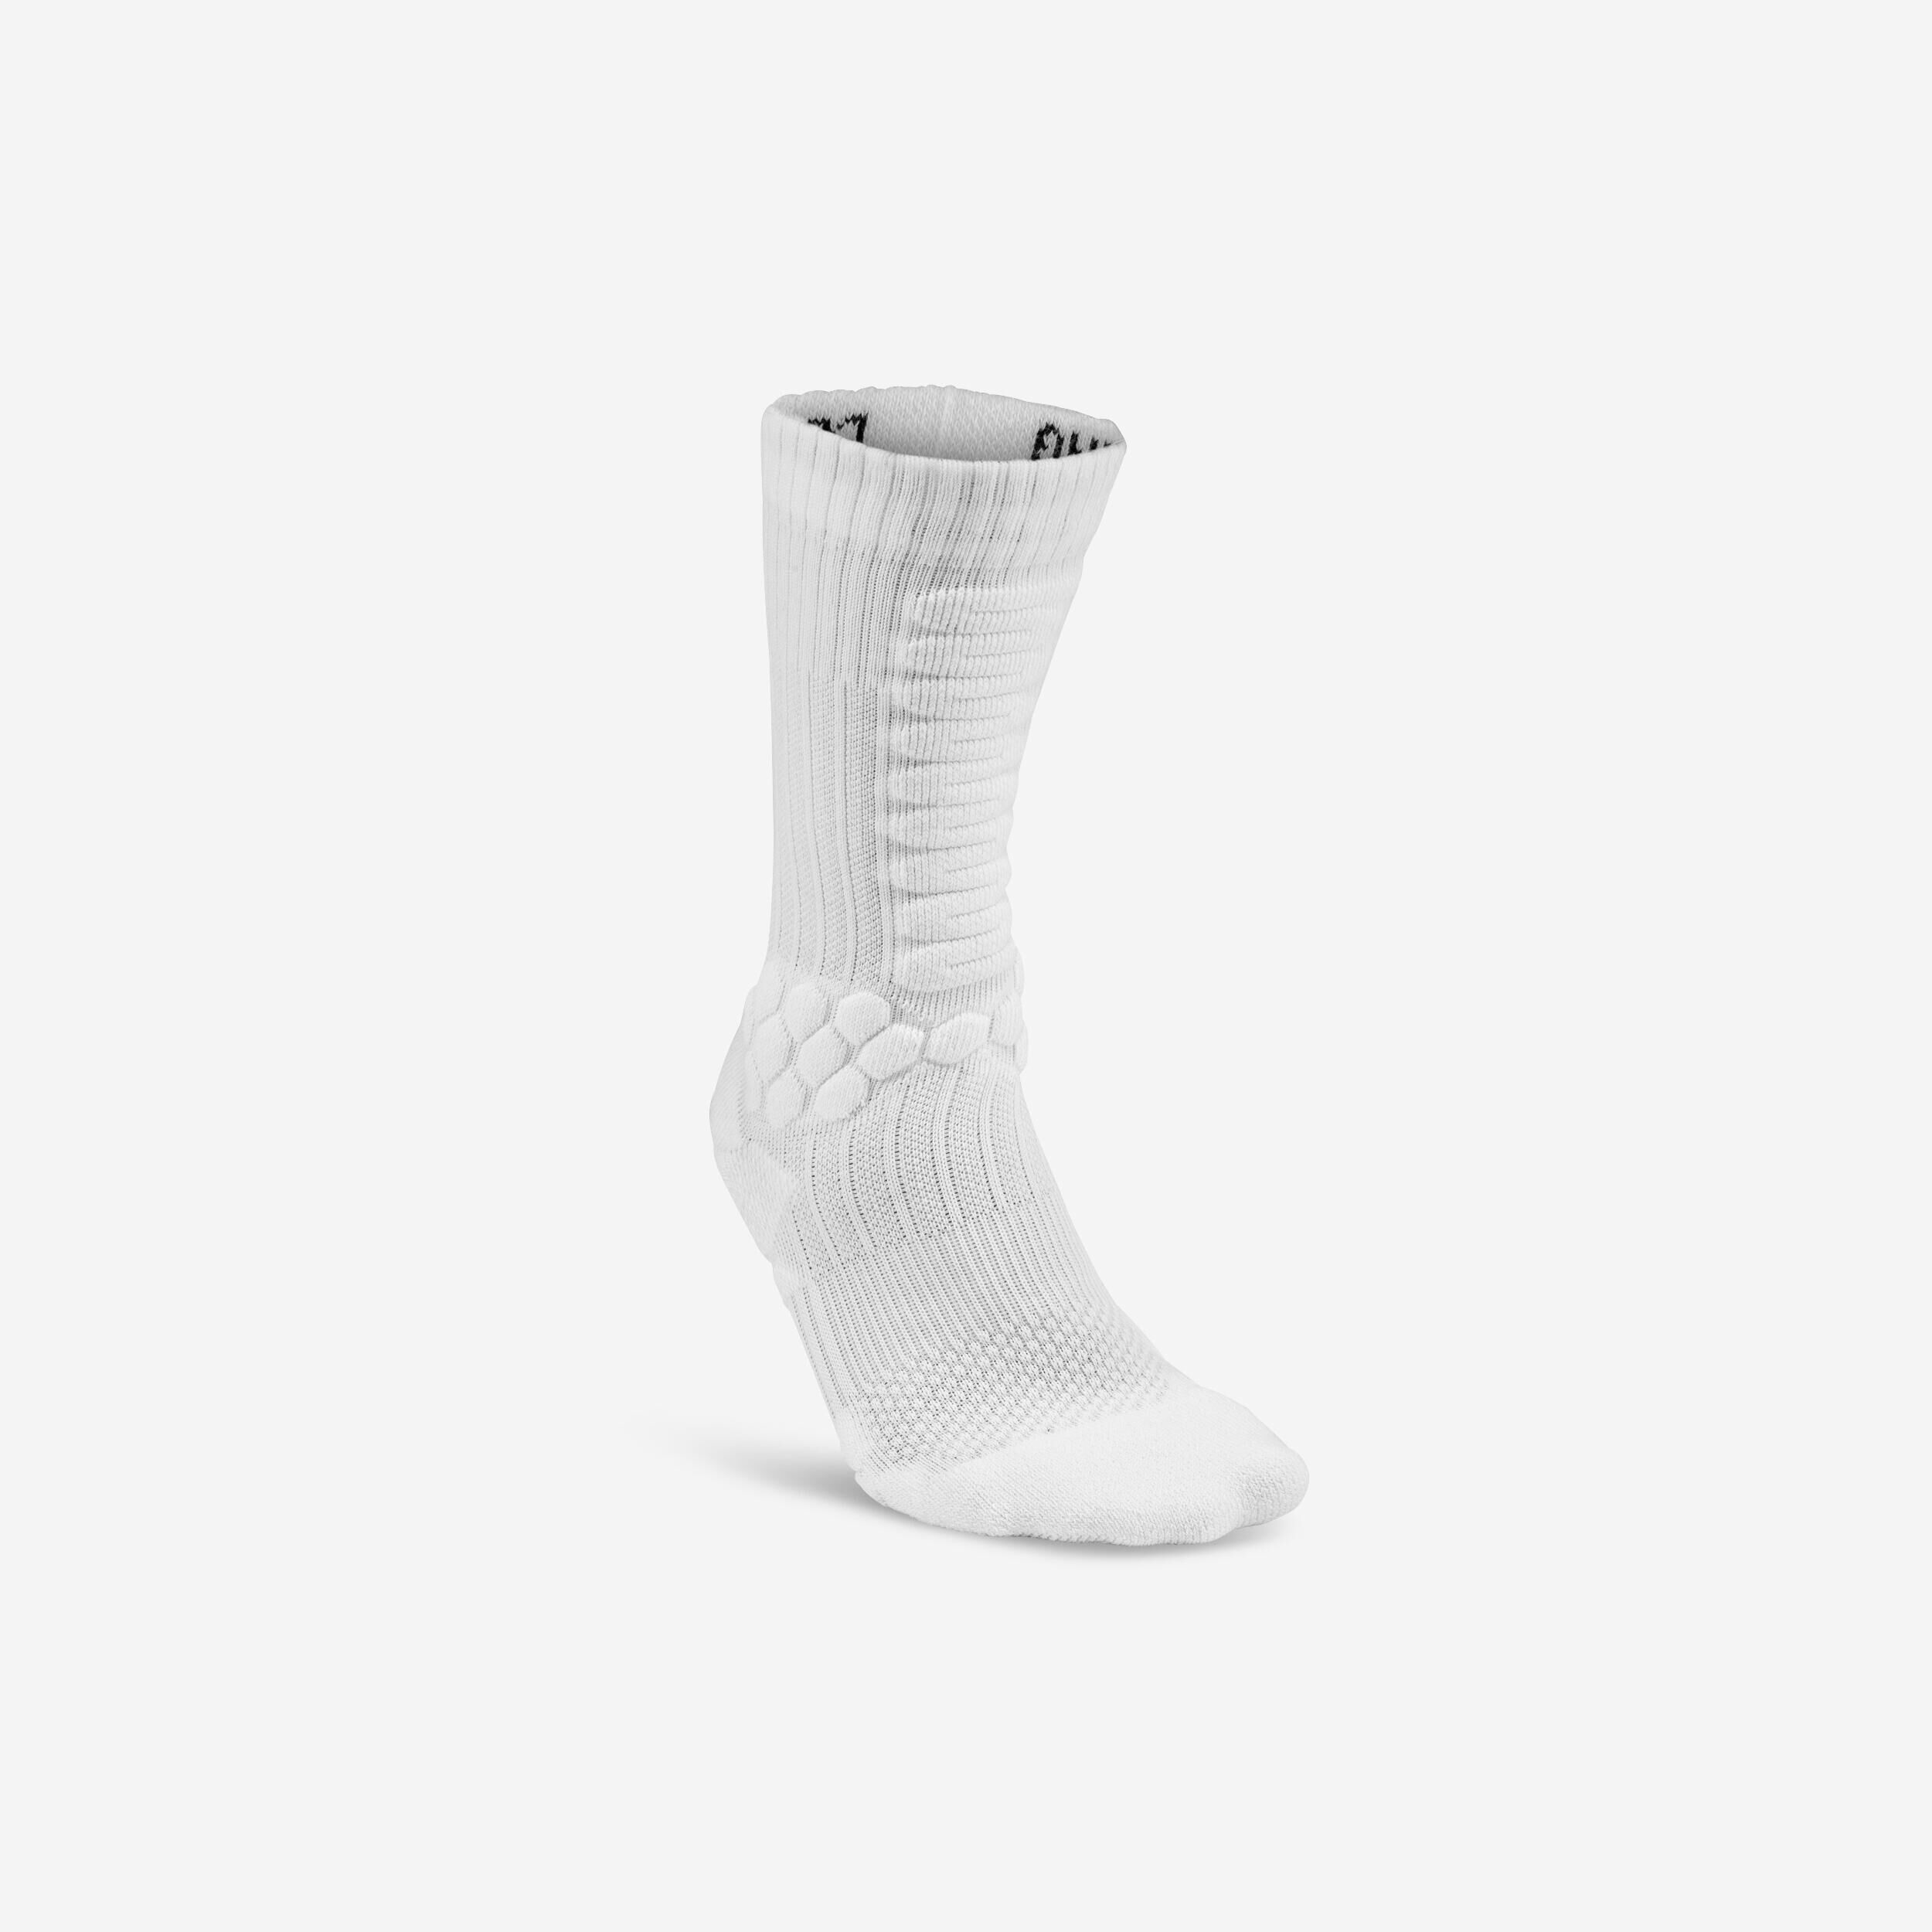 OXELO 500 Skateboarding Mid-Rise Socks - White